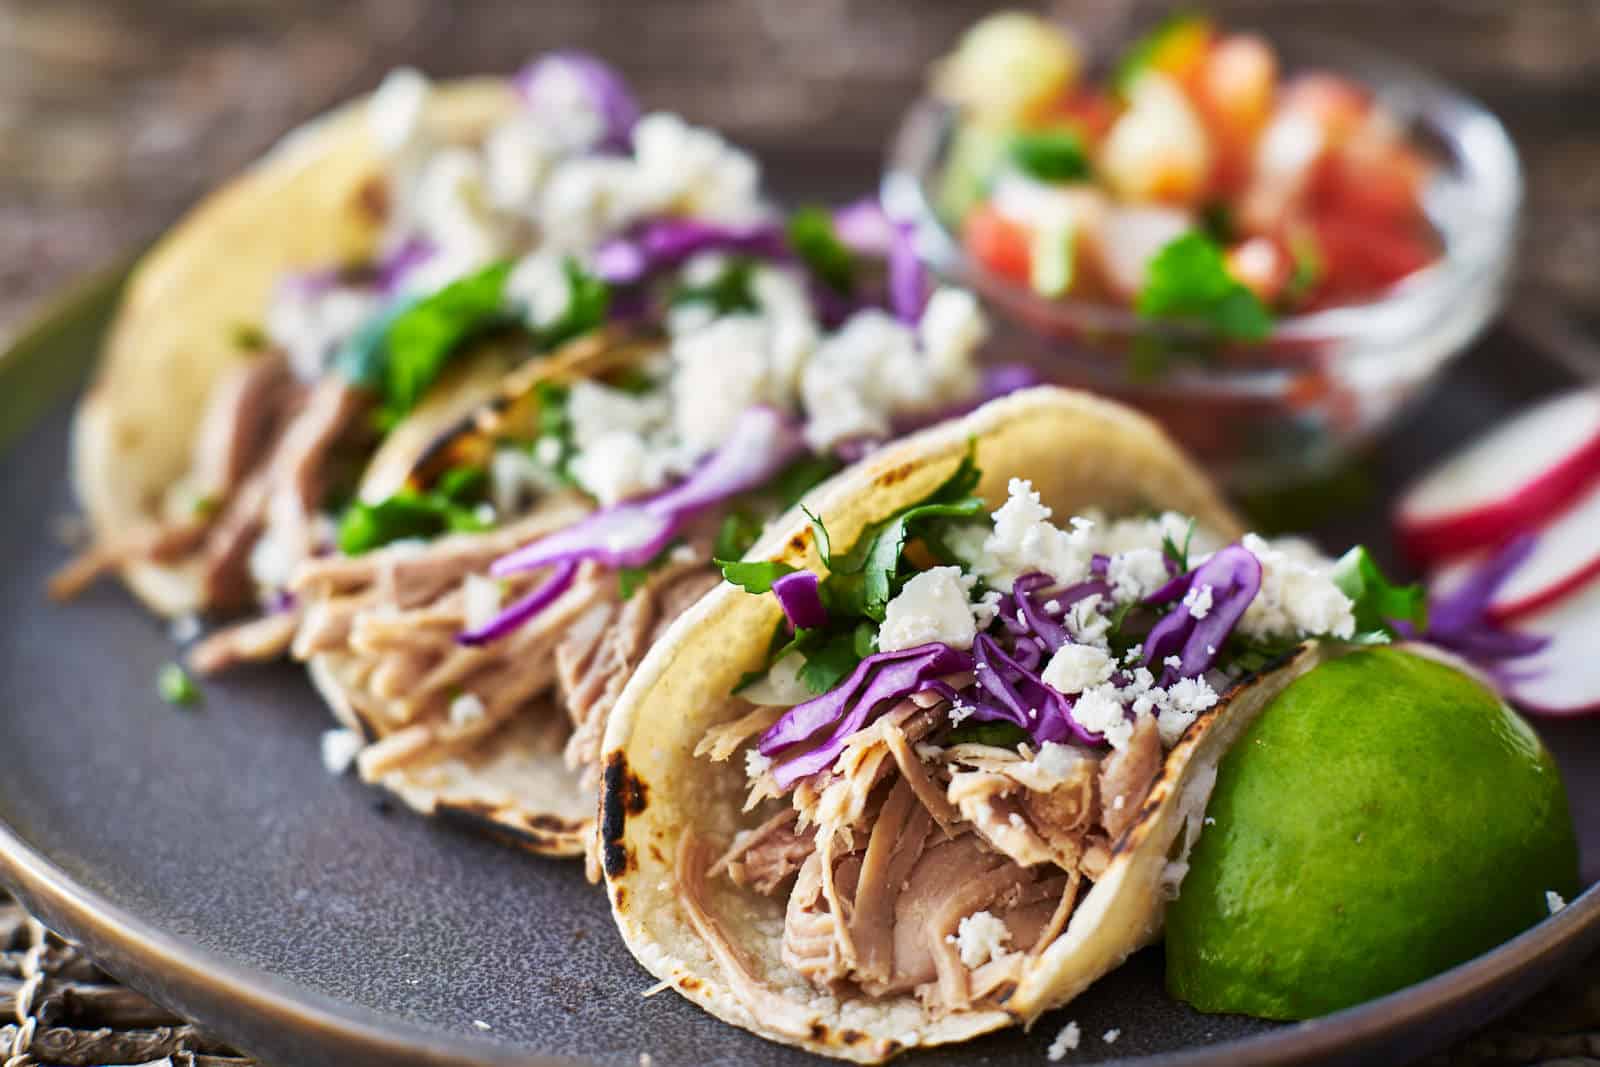 Lalo’s Fine Mexican Cuisine of Dallas